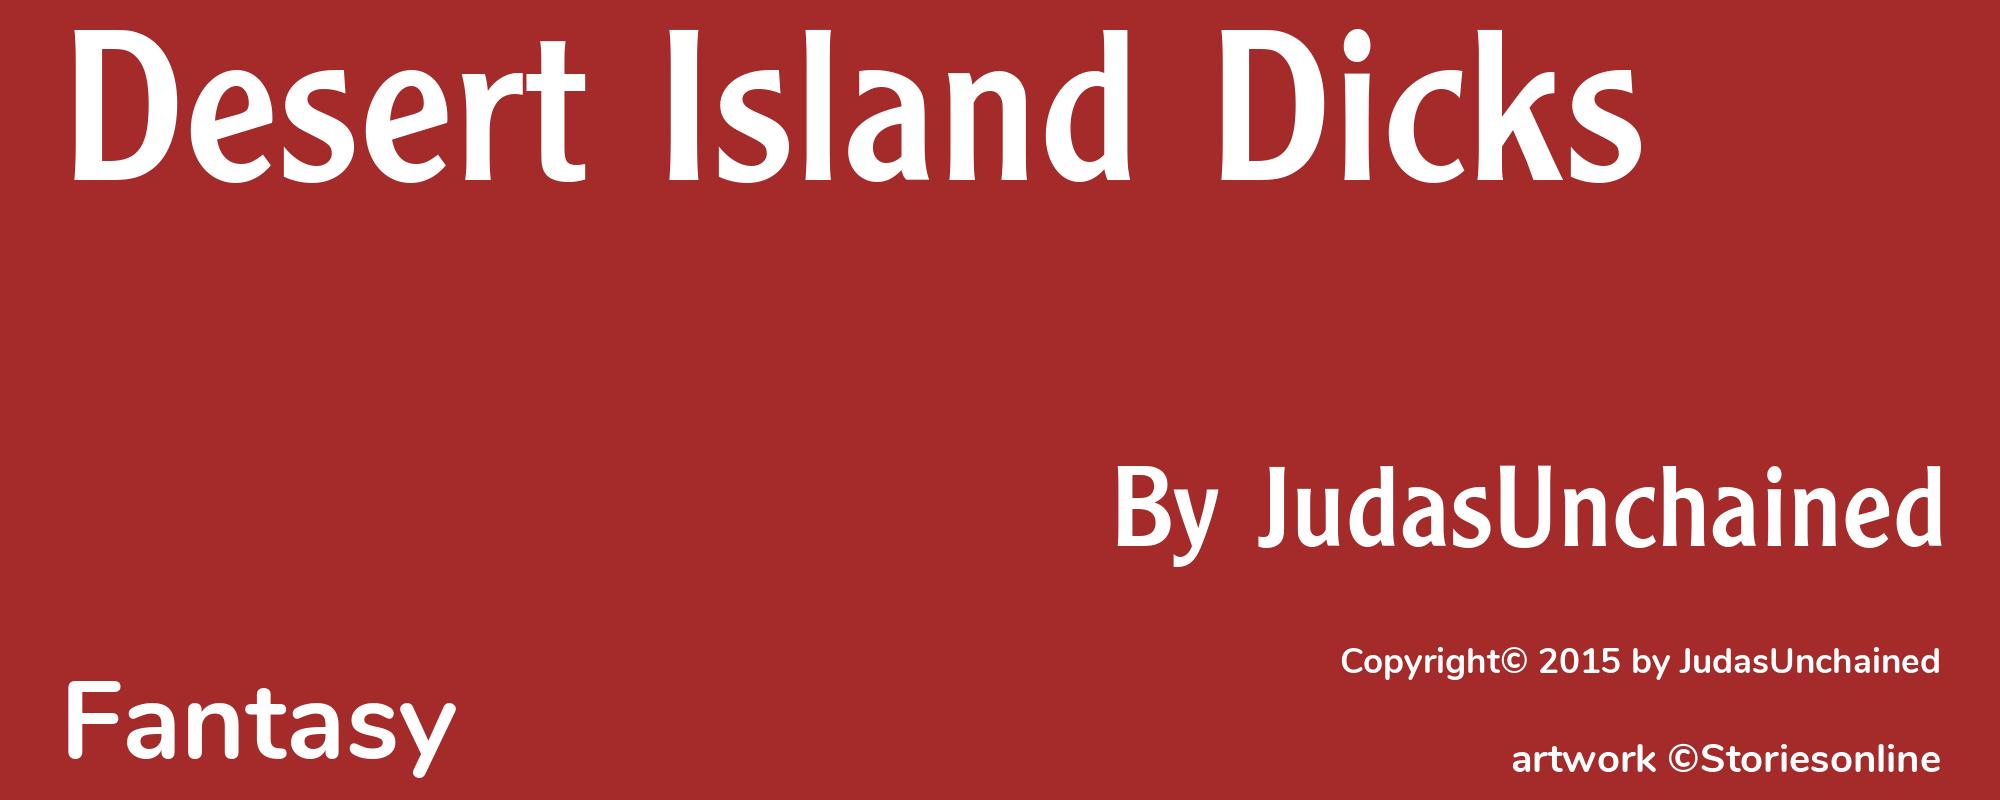 Desert Island Dicks - Cover